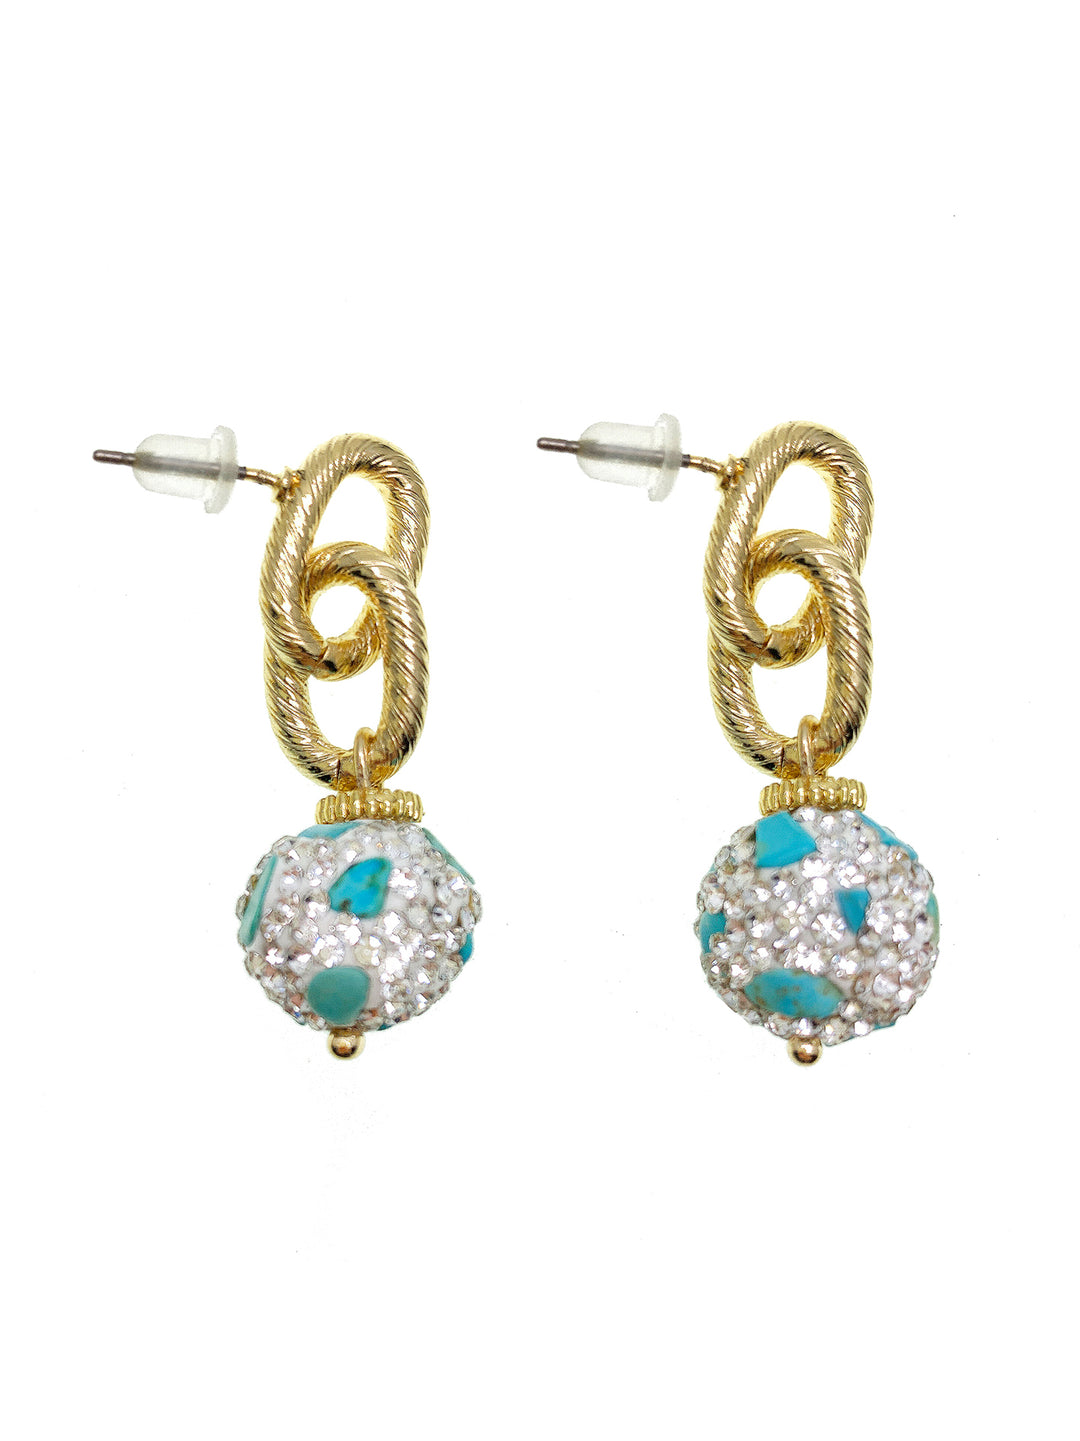 Rhinestone Bordered Turquoise Chain Earrings GE024 - FARRA